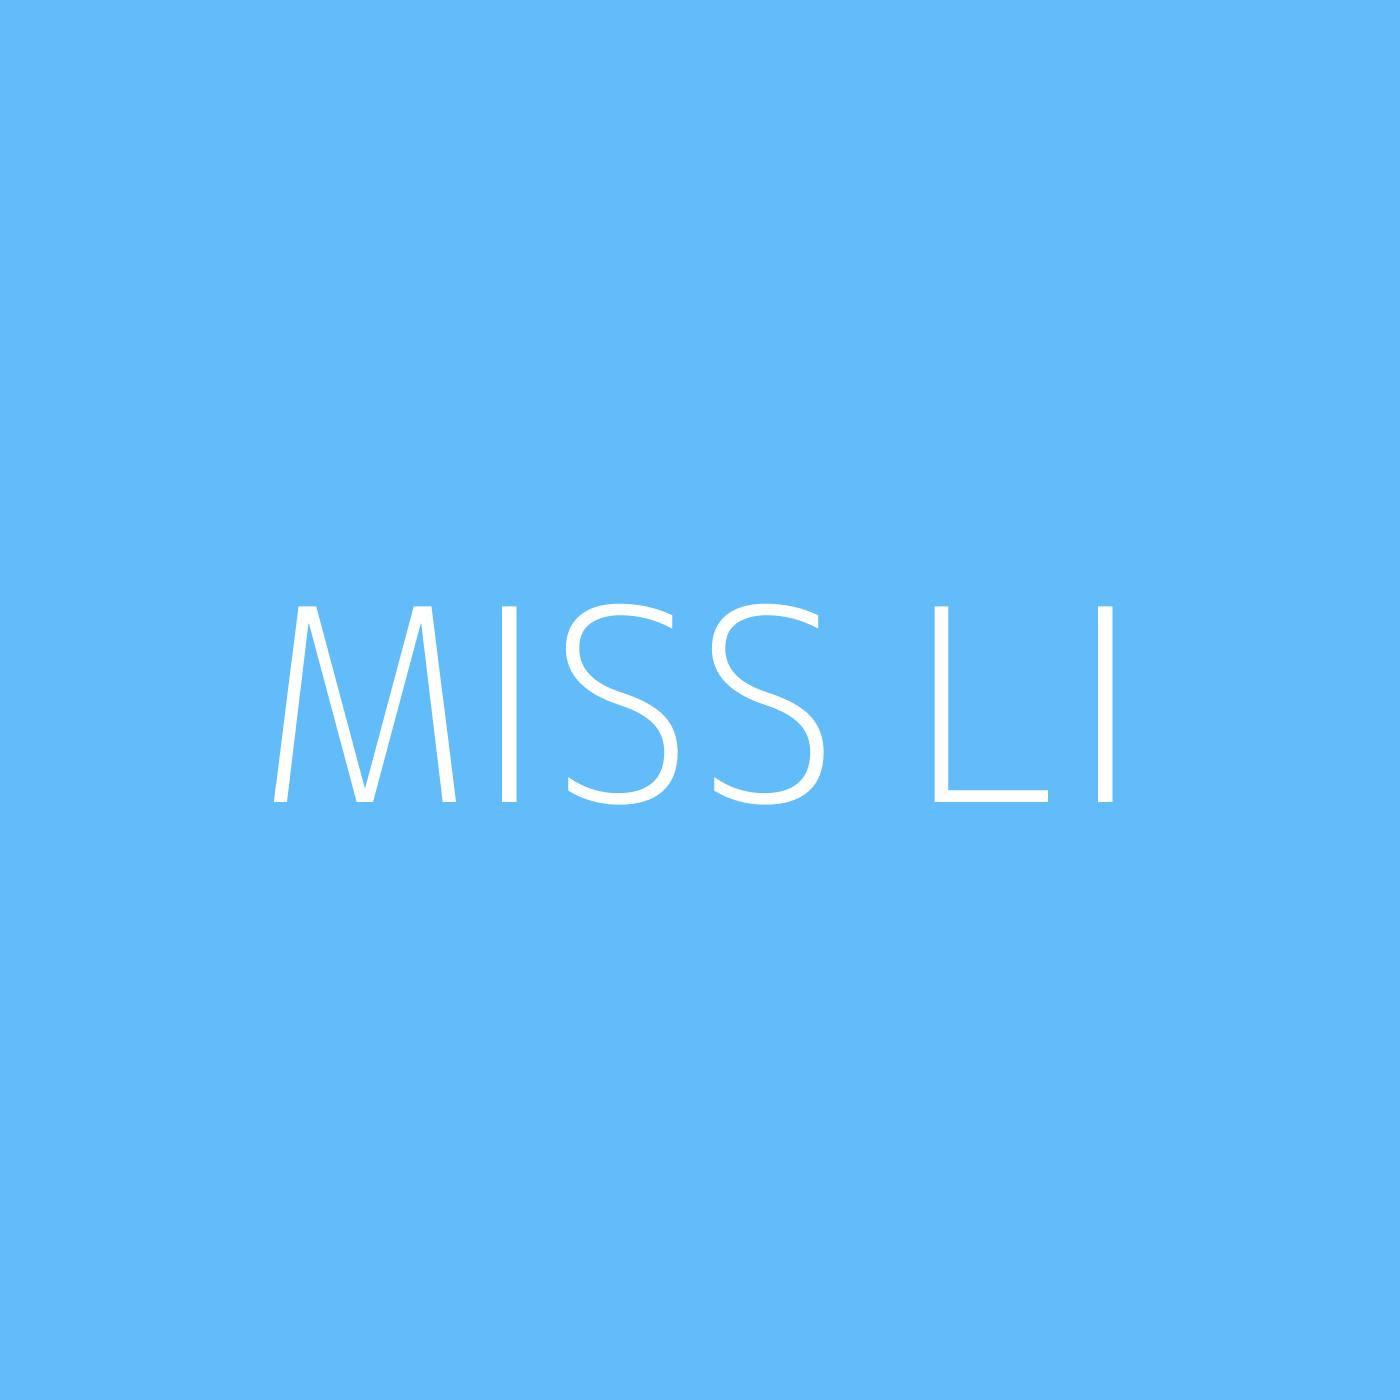 Miss Li Playlist Artwork